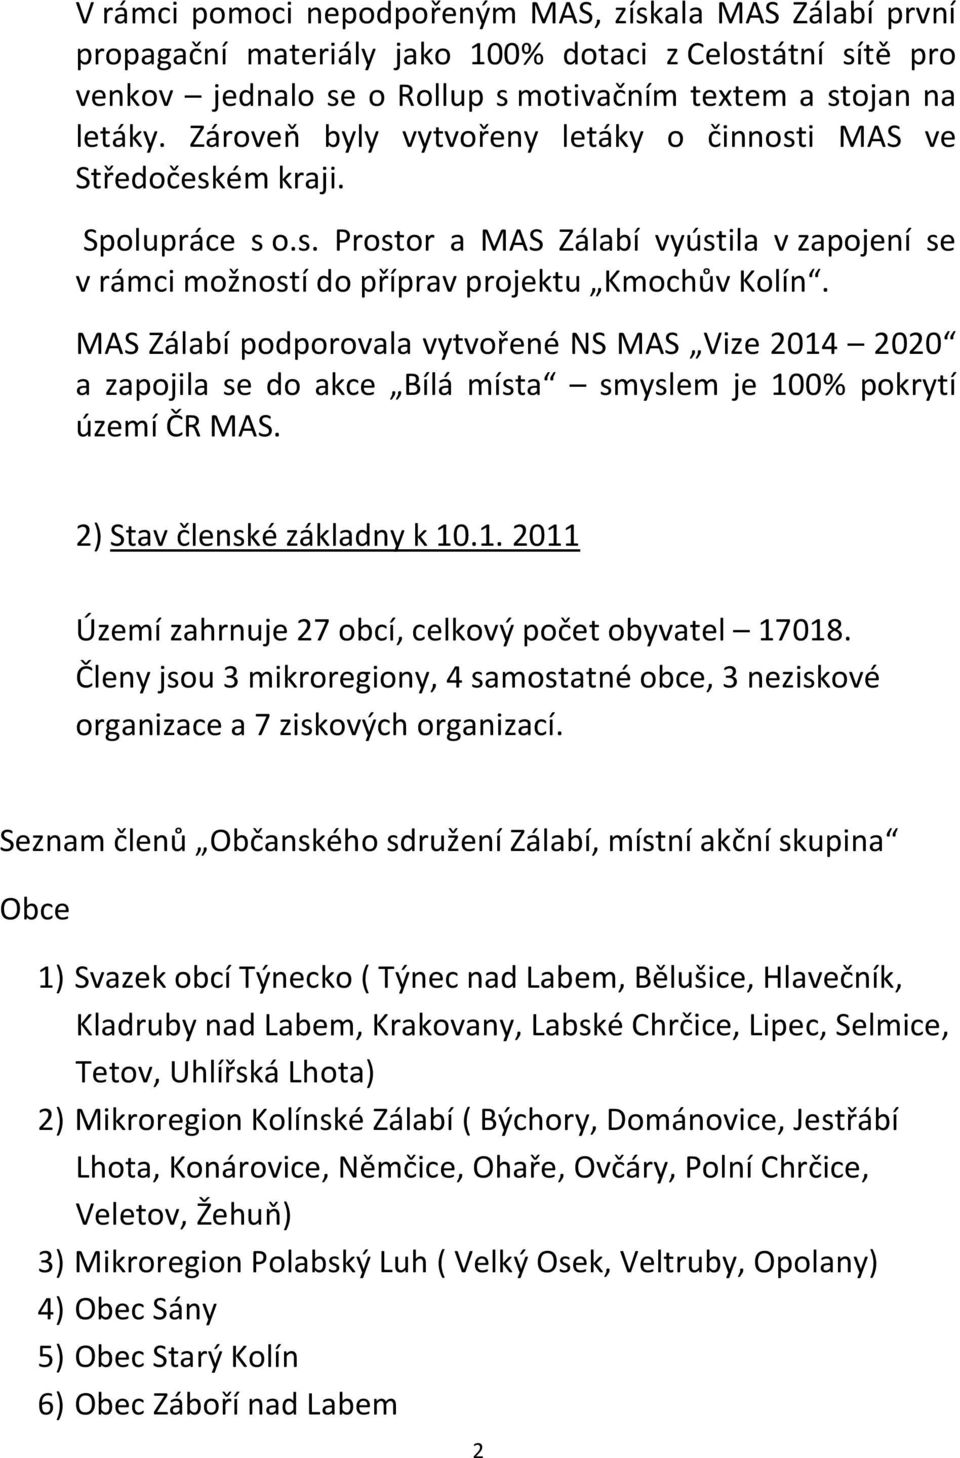 MAS Zálabí podporovala vytvořené NS MAS Vize 2014 2020 a zapojila se do akce Bílá místa smyslem je 100% pokrytí území ČR MAS. 2) Stav členské základny k 10.1. 2011 Území zahrnuje 27 obcí, celkový počet obyvatel 17018.